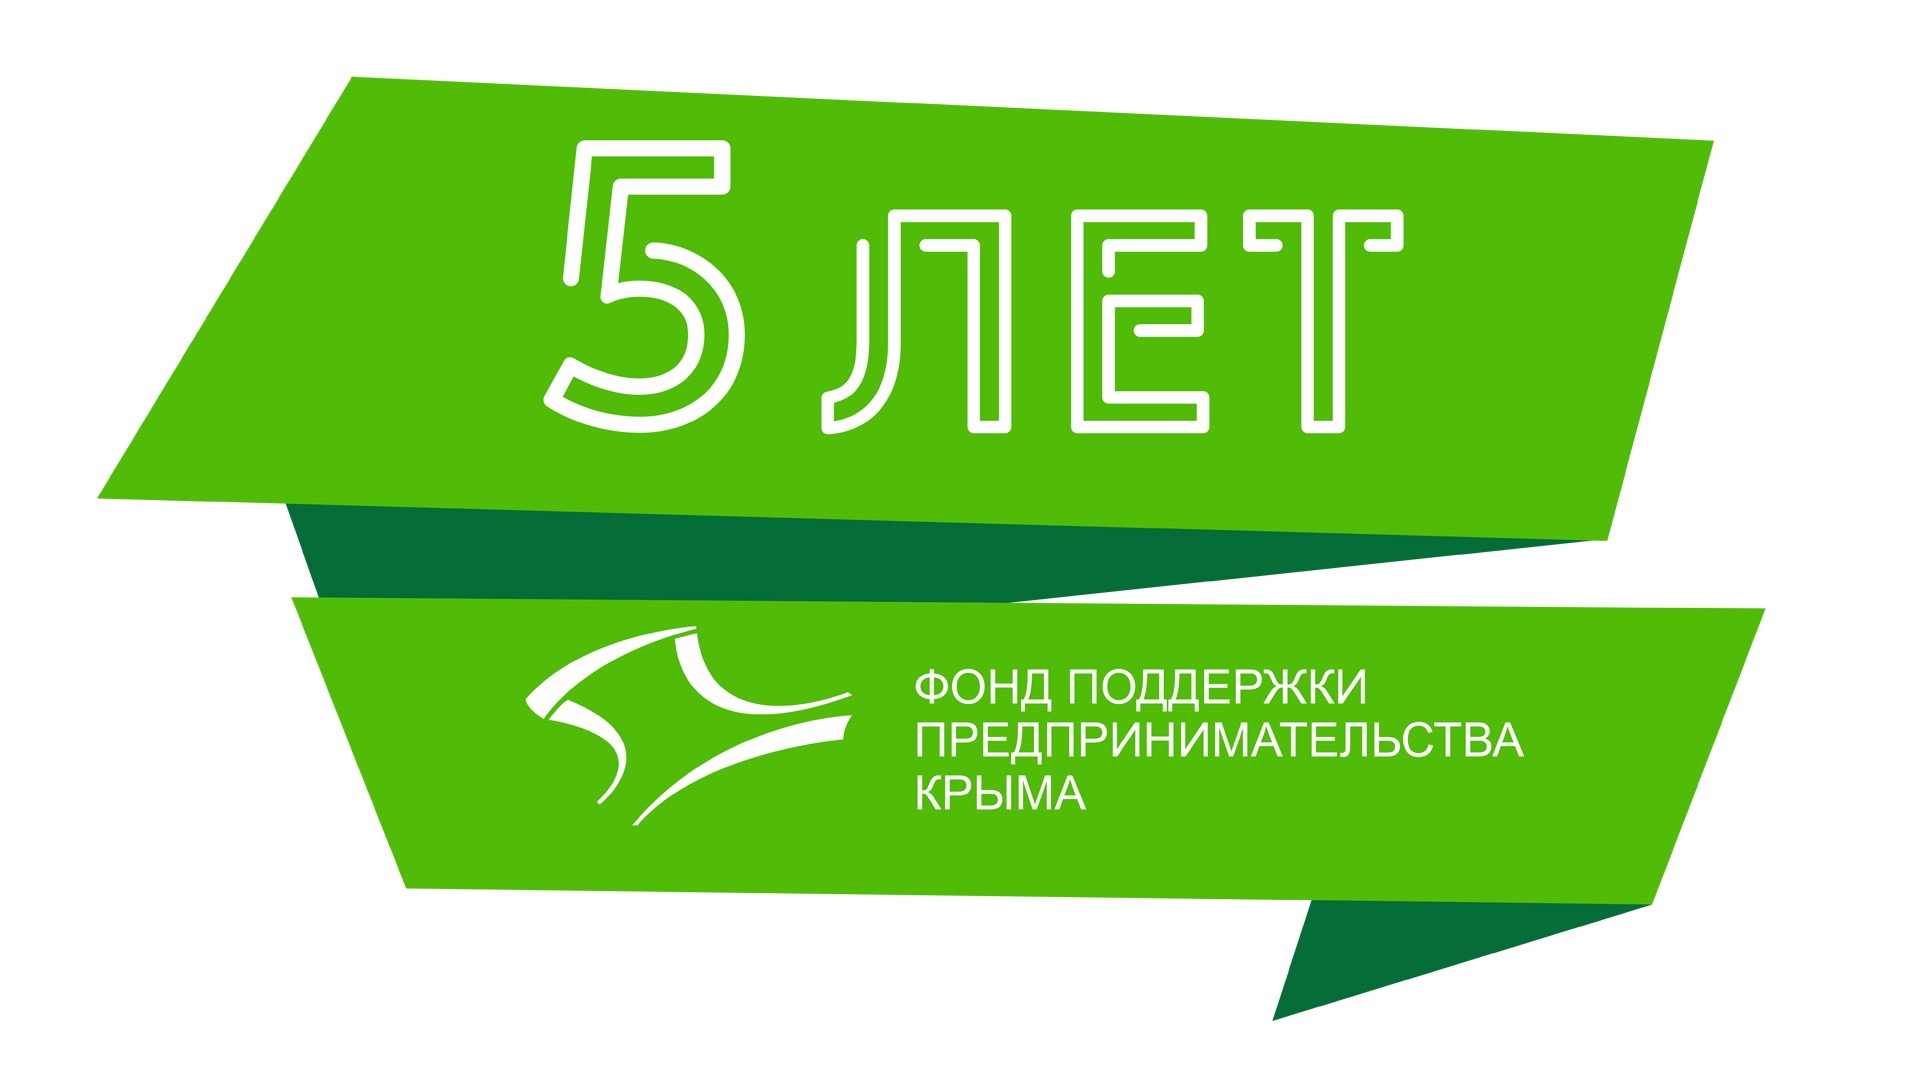 Фонду Поддержки предпринимательства Крыма – пять лет!